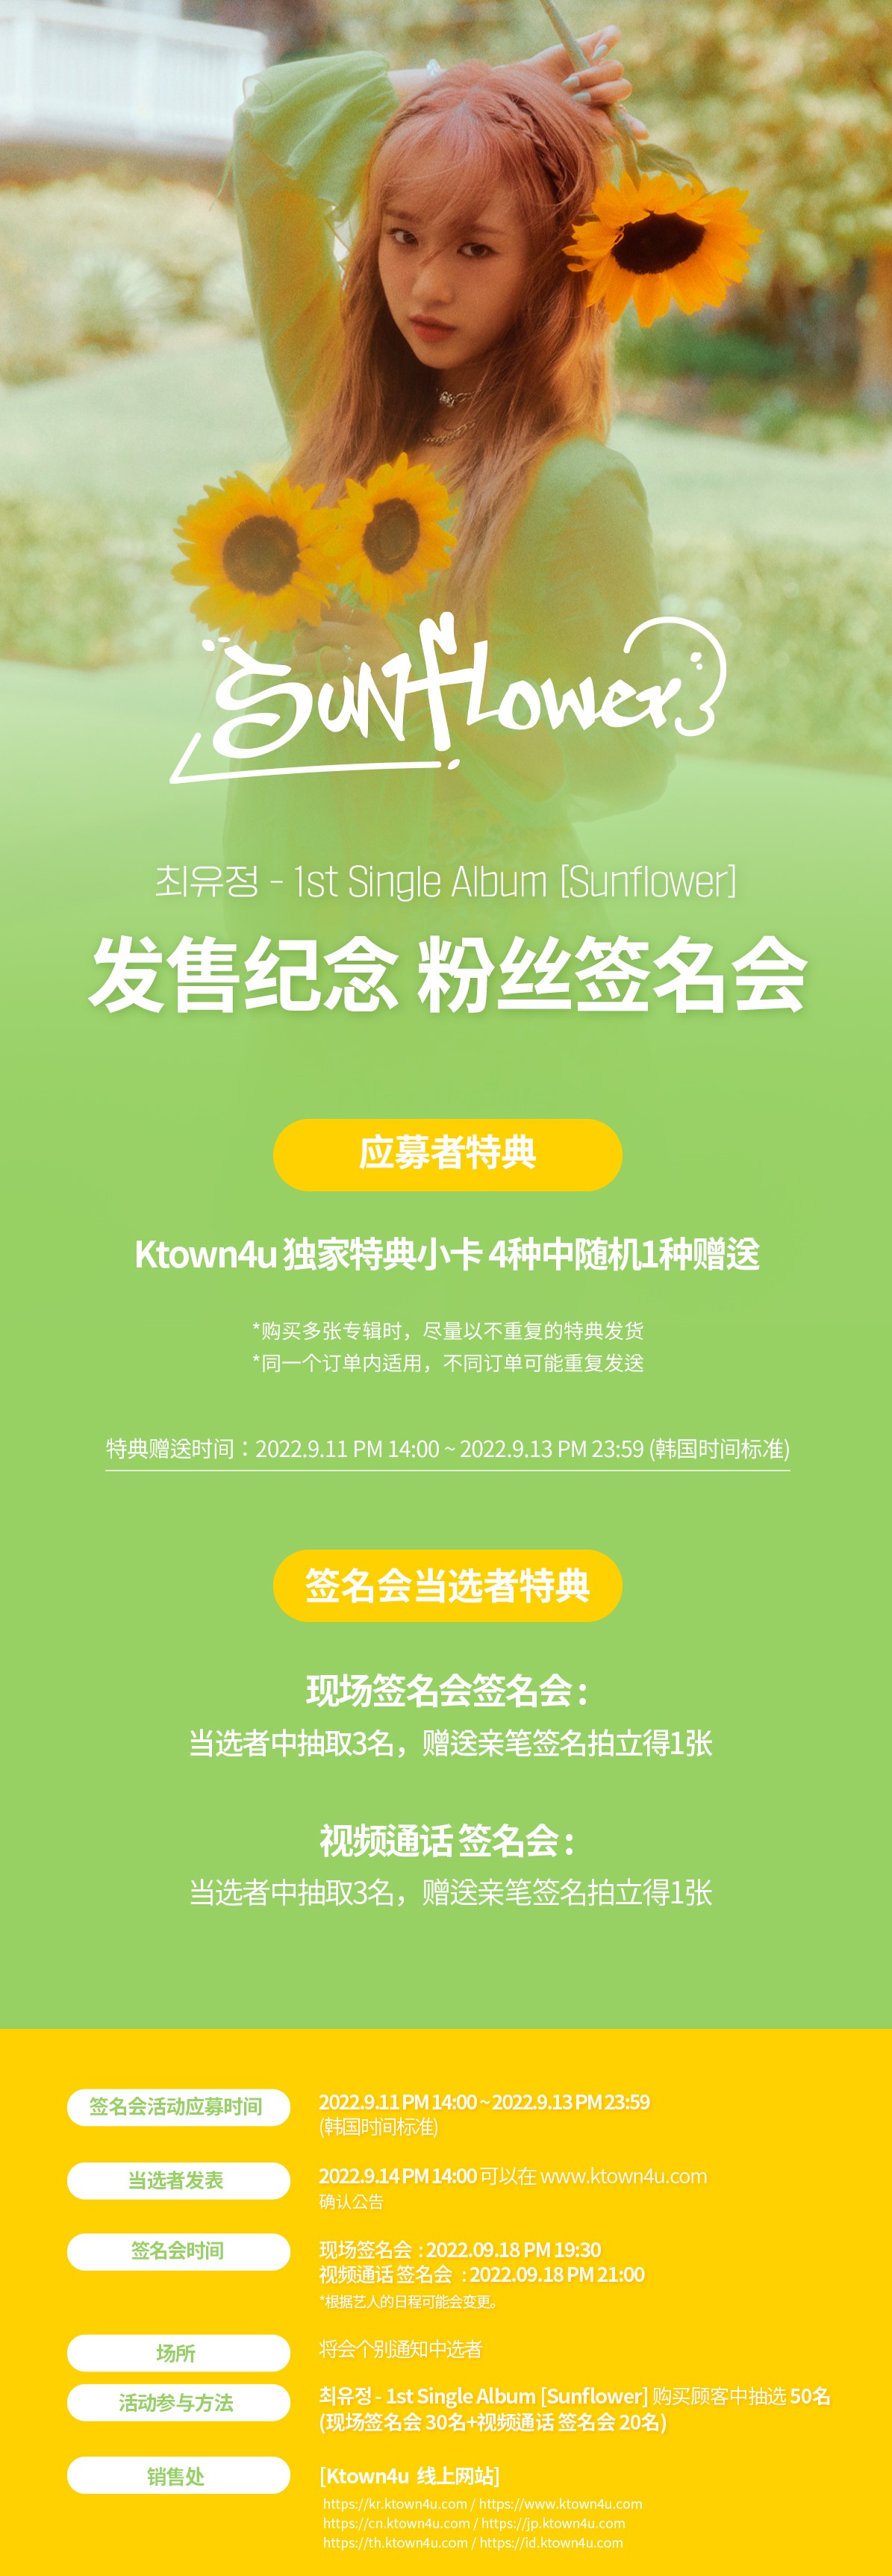 cn.ktown4u.com : event detail_磪有情